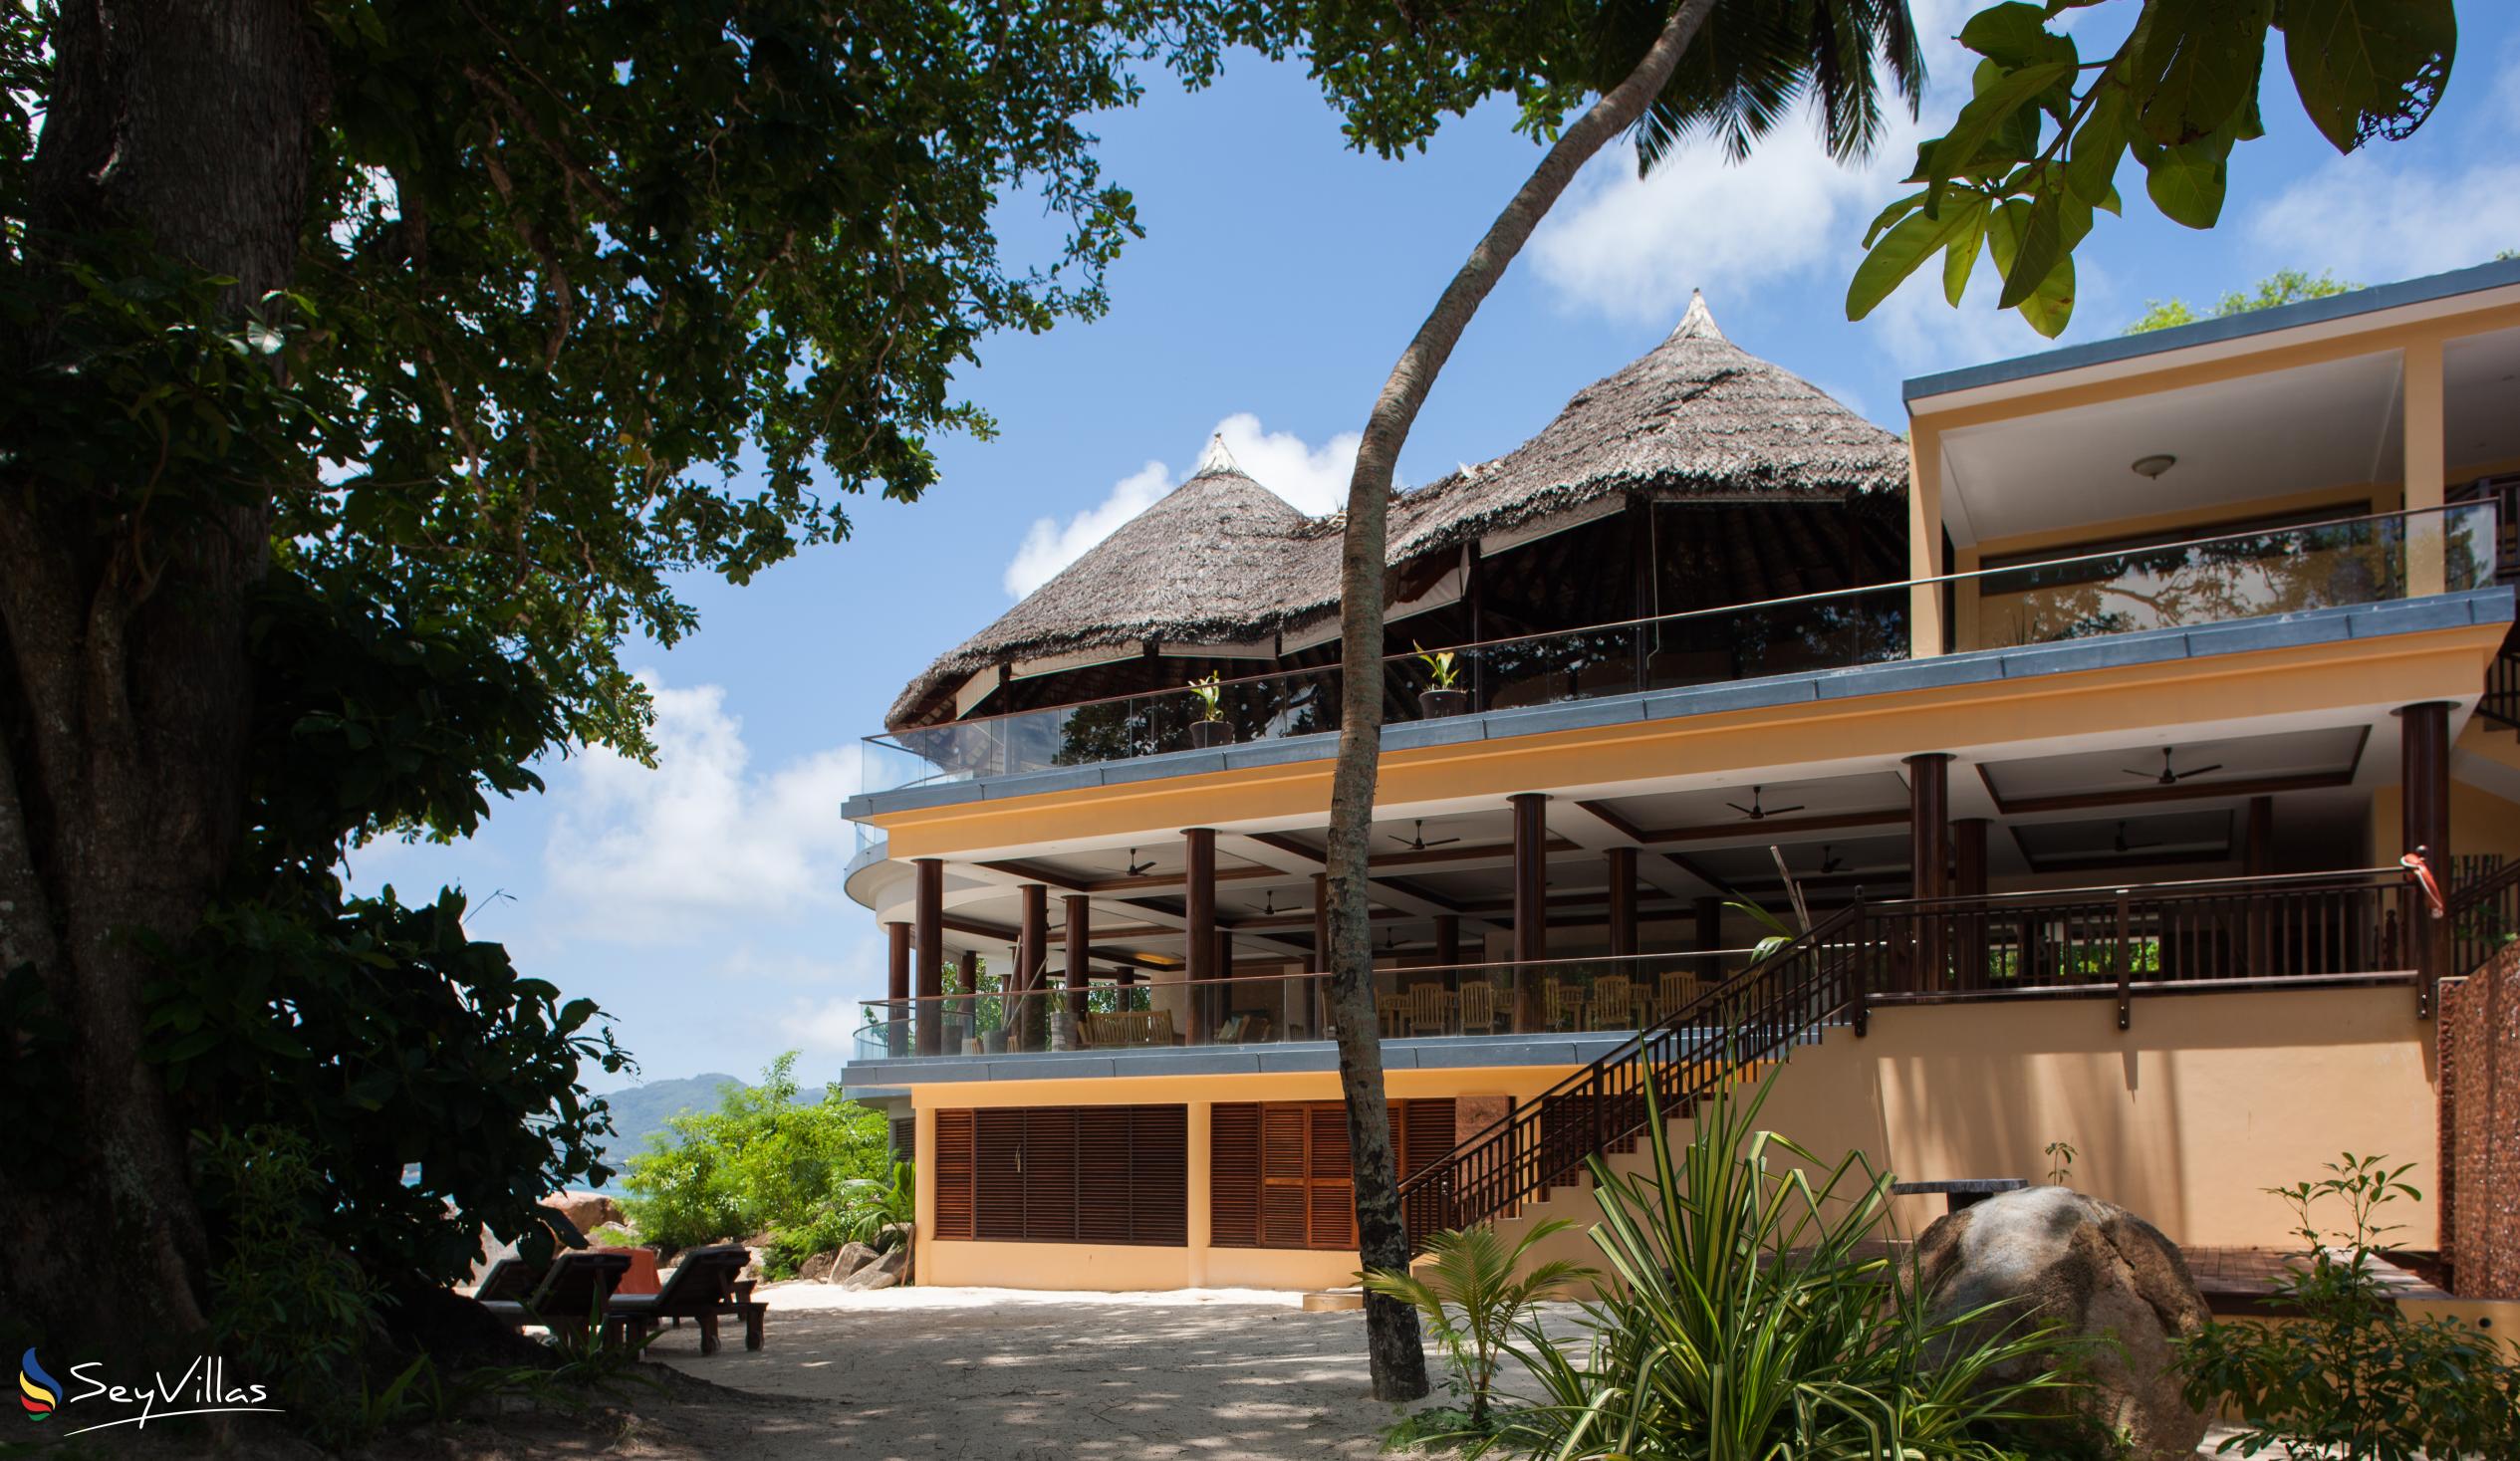 Photo 40: Cerf Island Resort - Indoor area - Cerf Island (Seychelles)